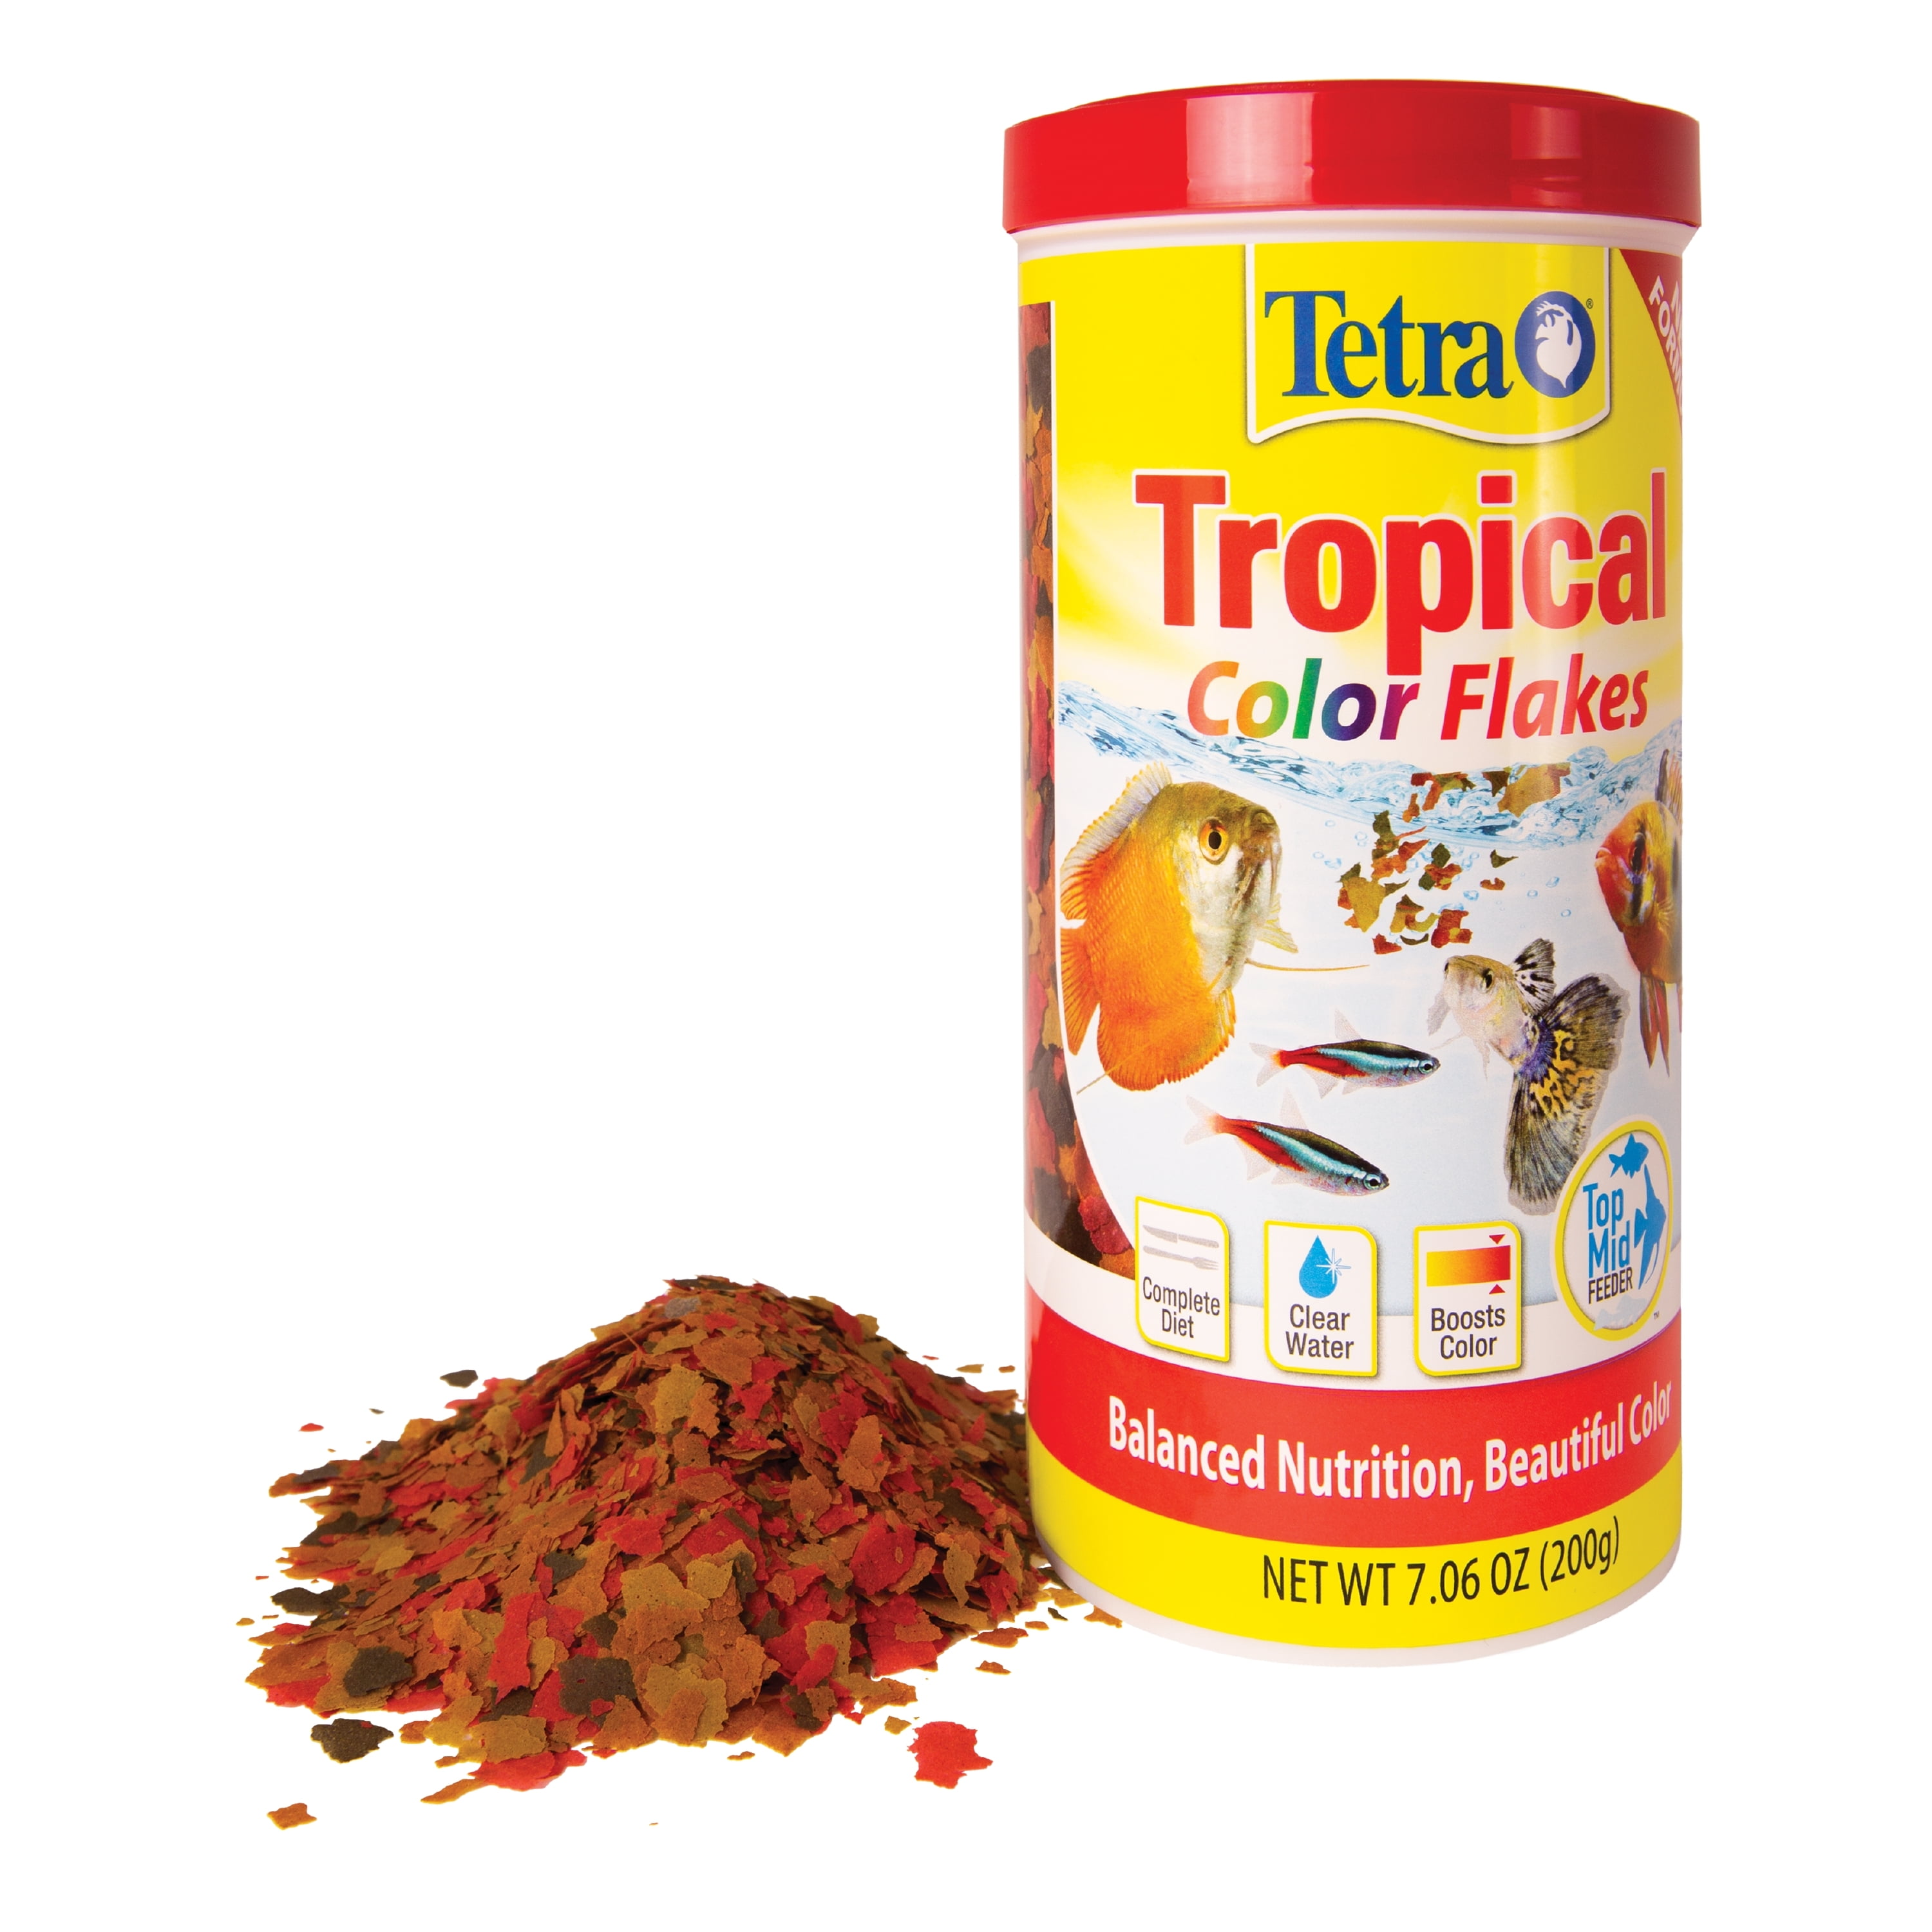 TetraMin® Tropical Flakes - Santa Rosa, CA - Caesar's Tropical Fish